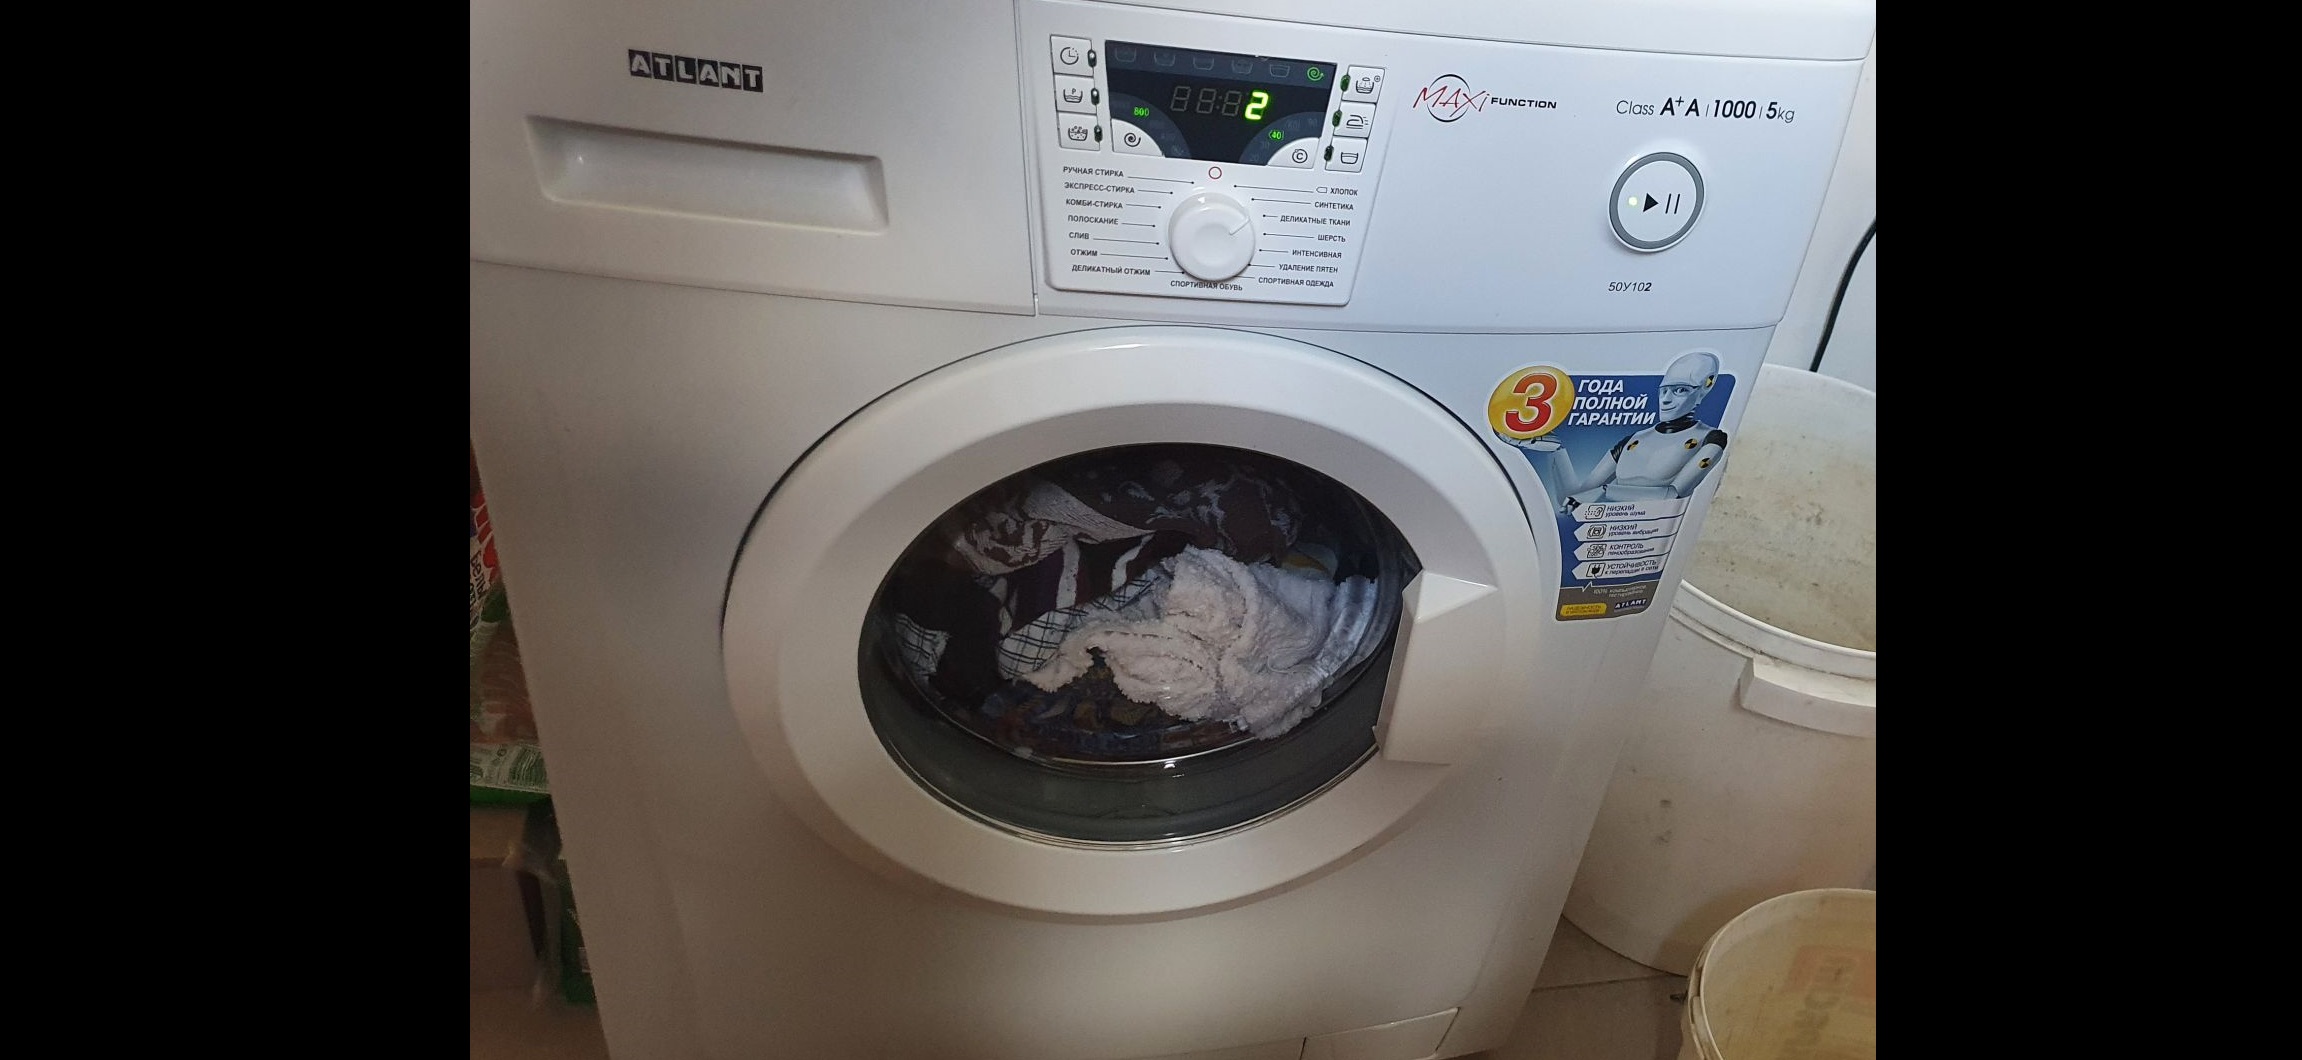 læsset vasketøj i Atlant-maskinen